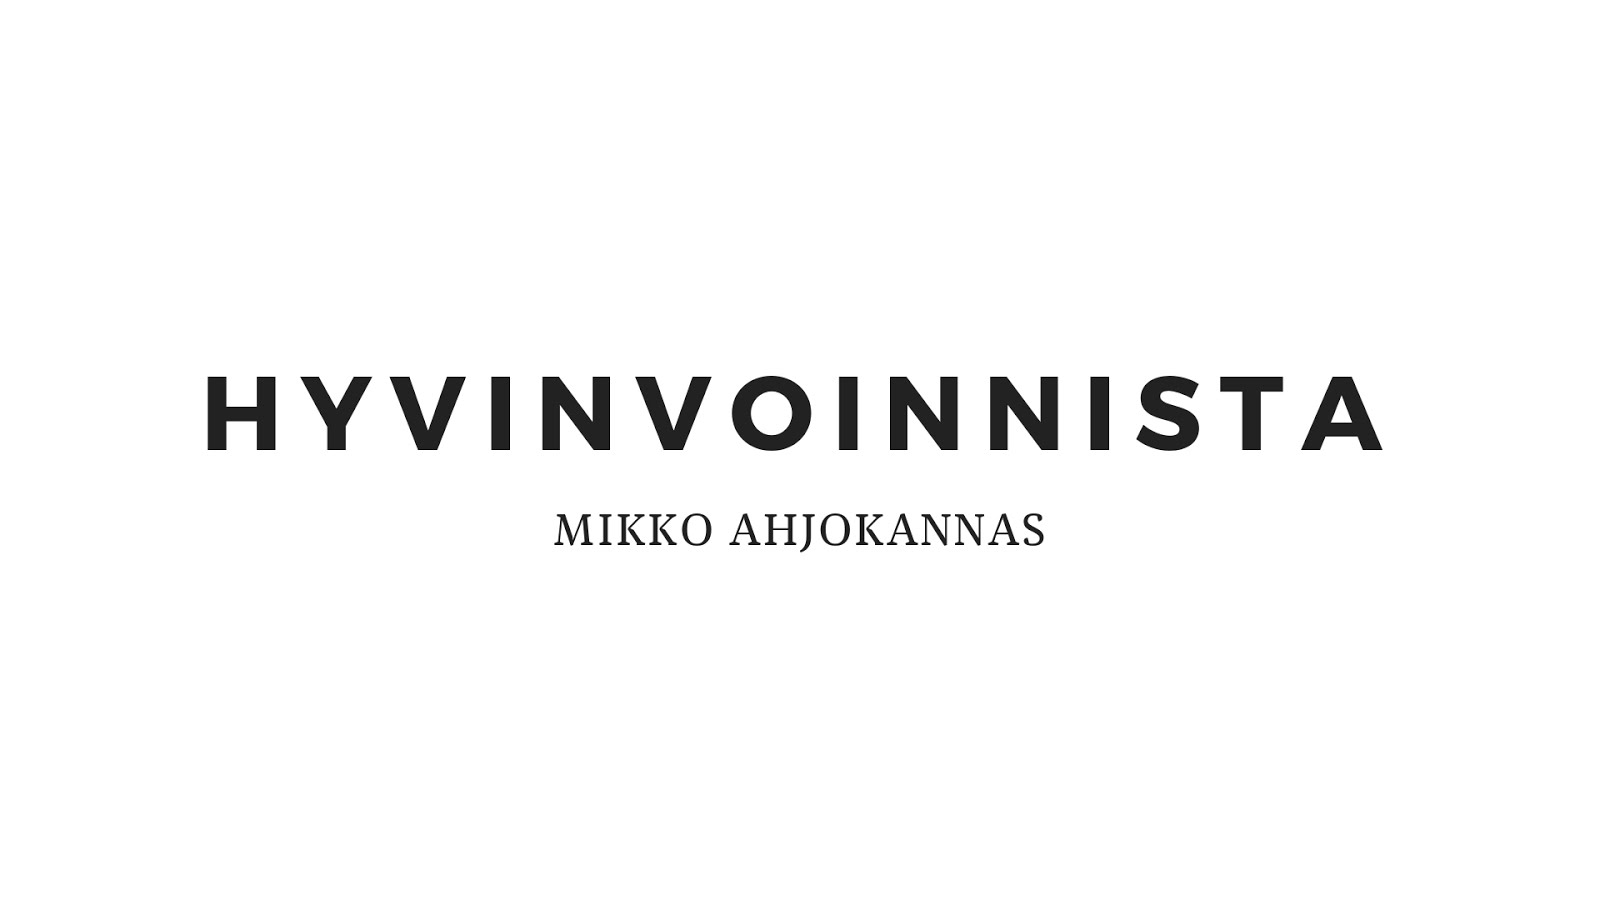 Hyvinvoinnista - Mikko Ahjokannas